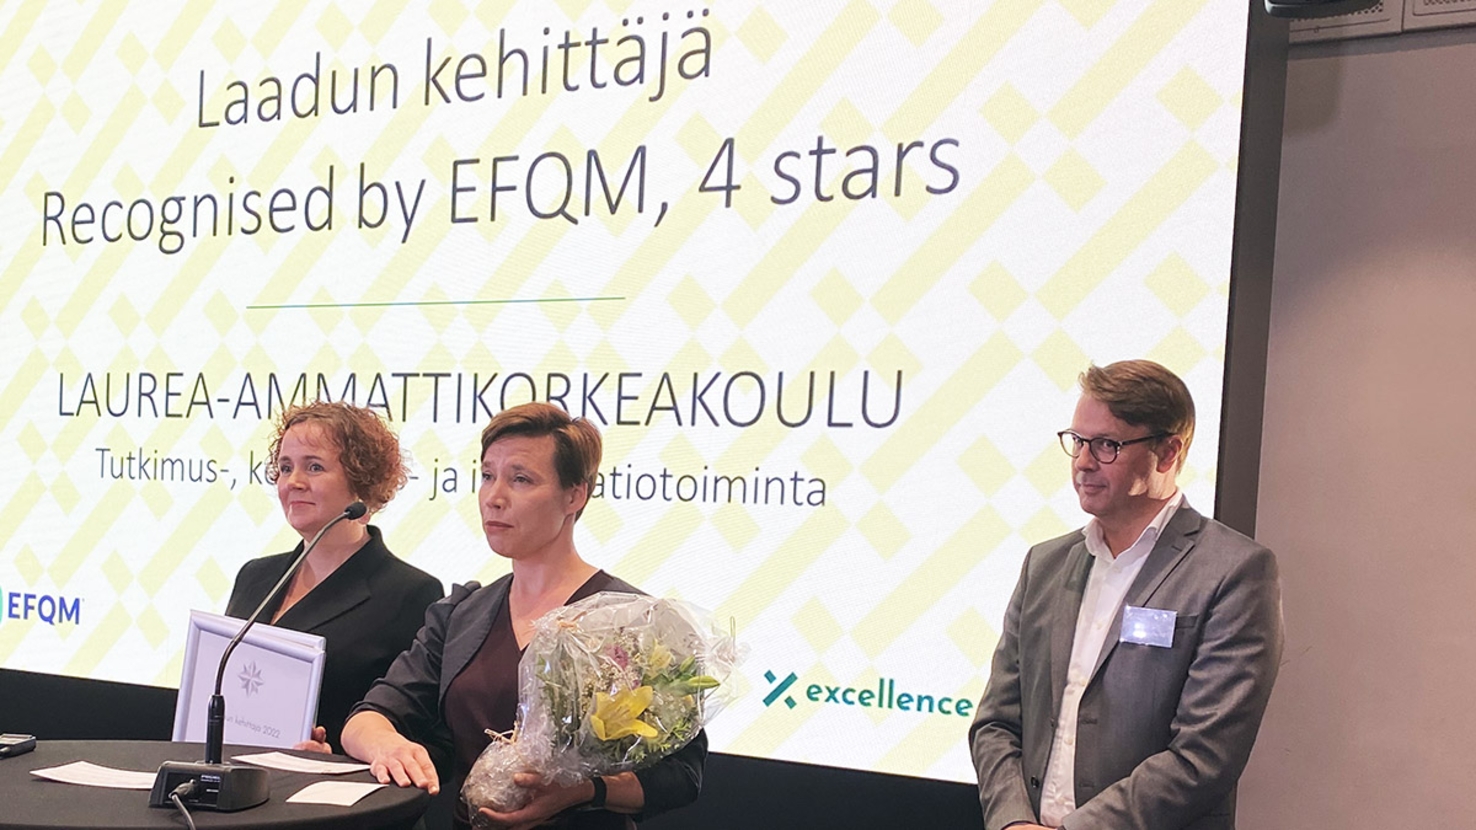 Laurea received EFQM quality award